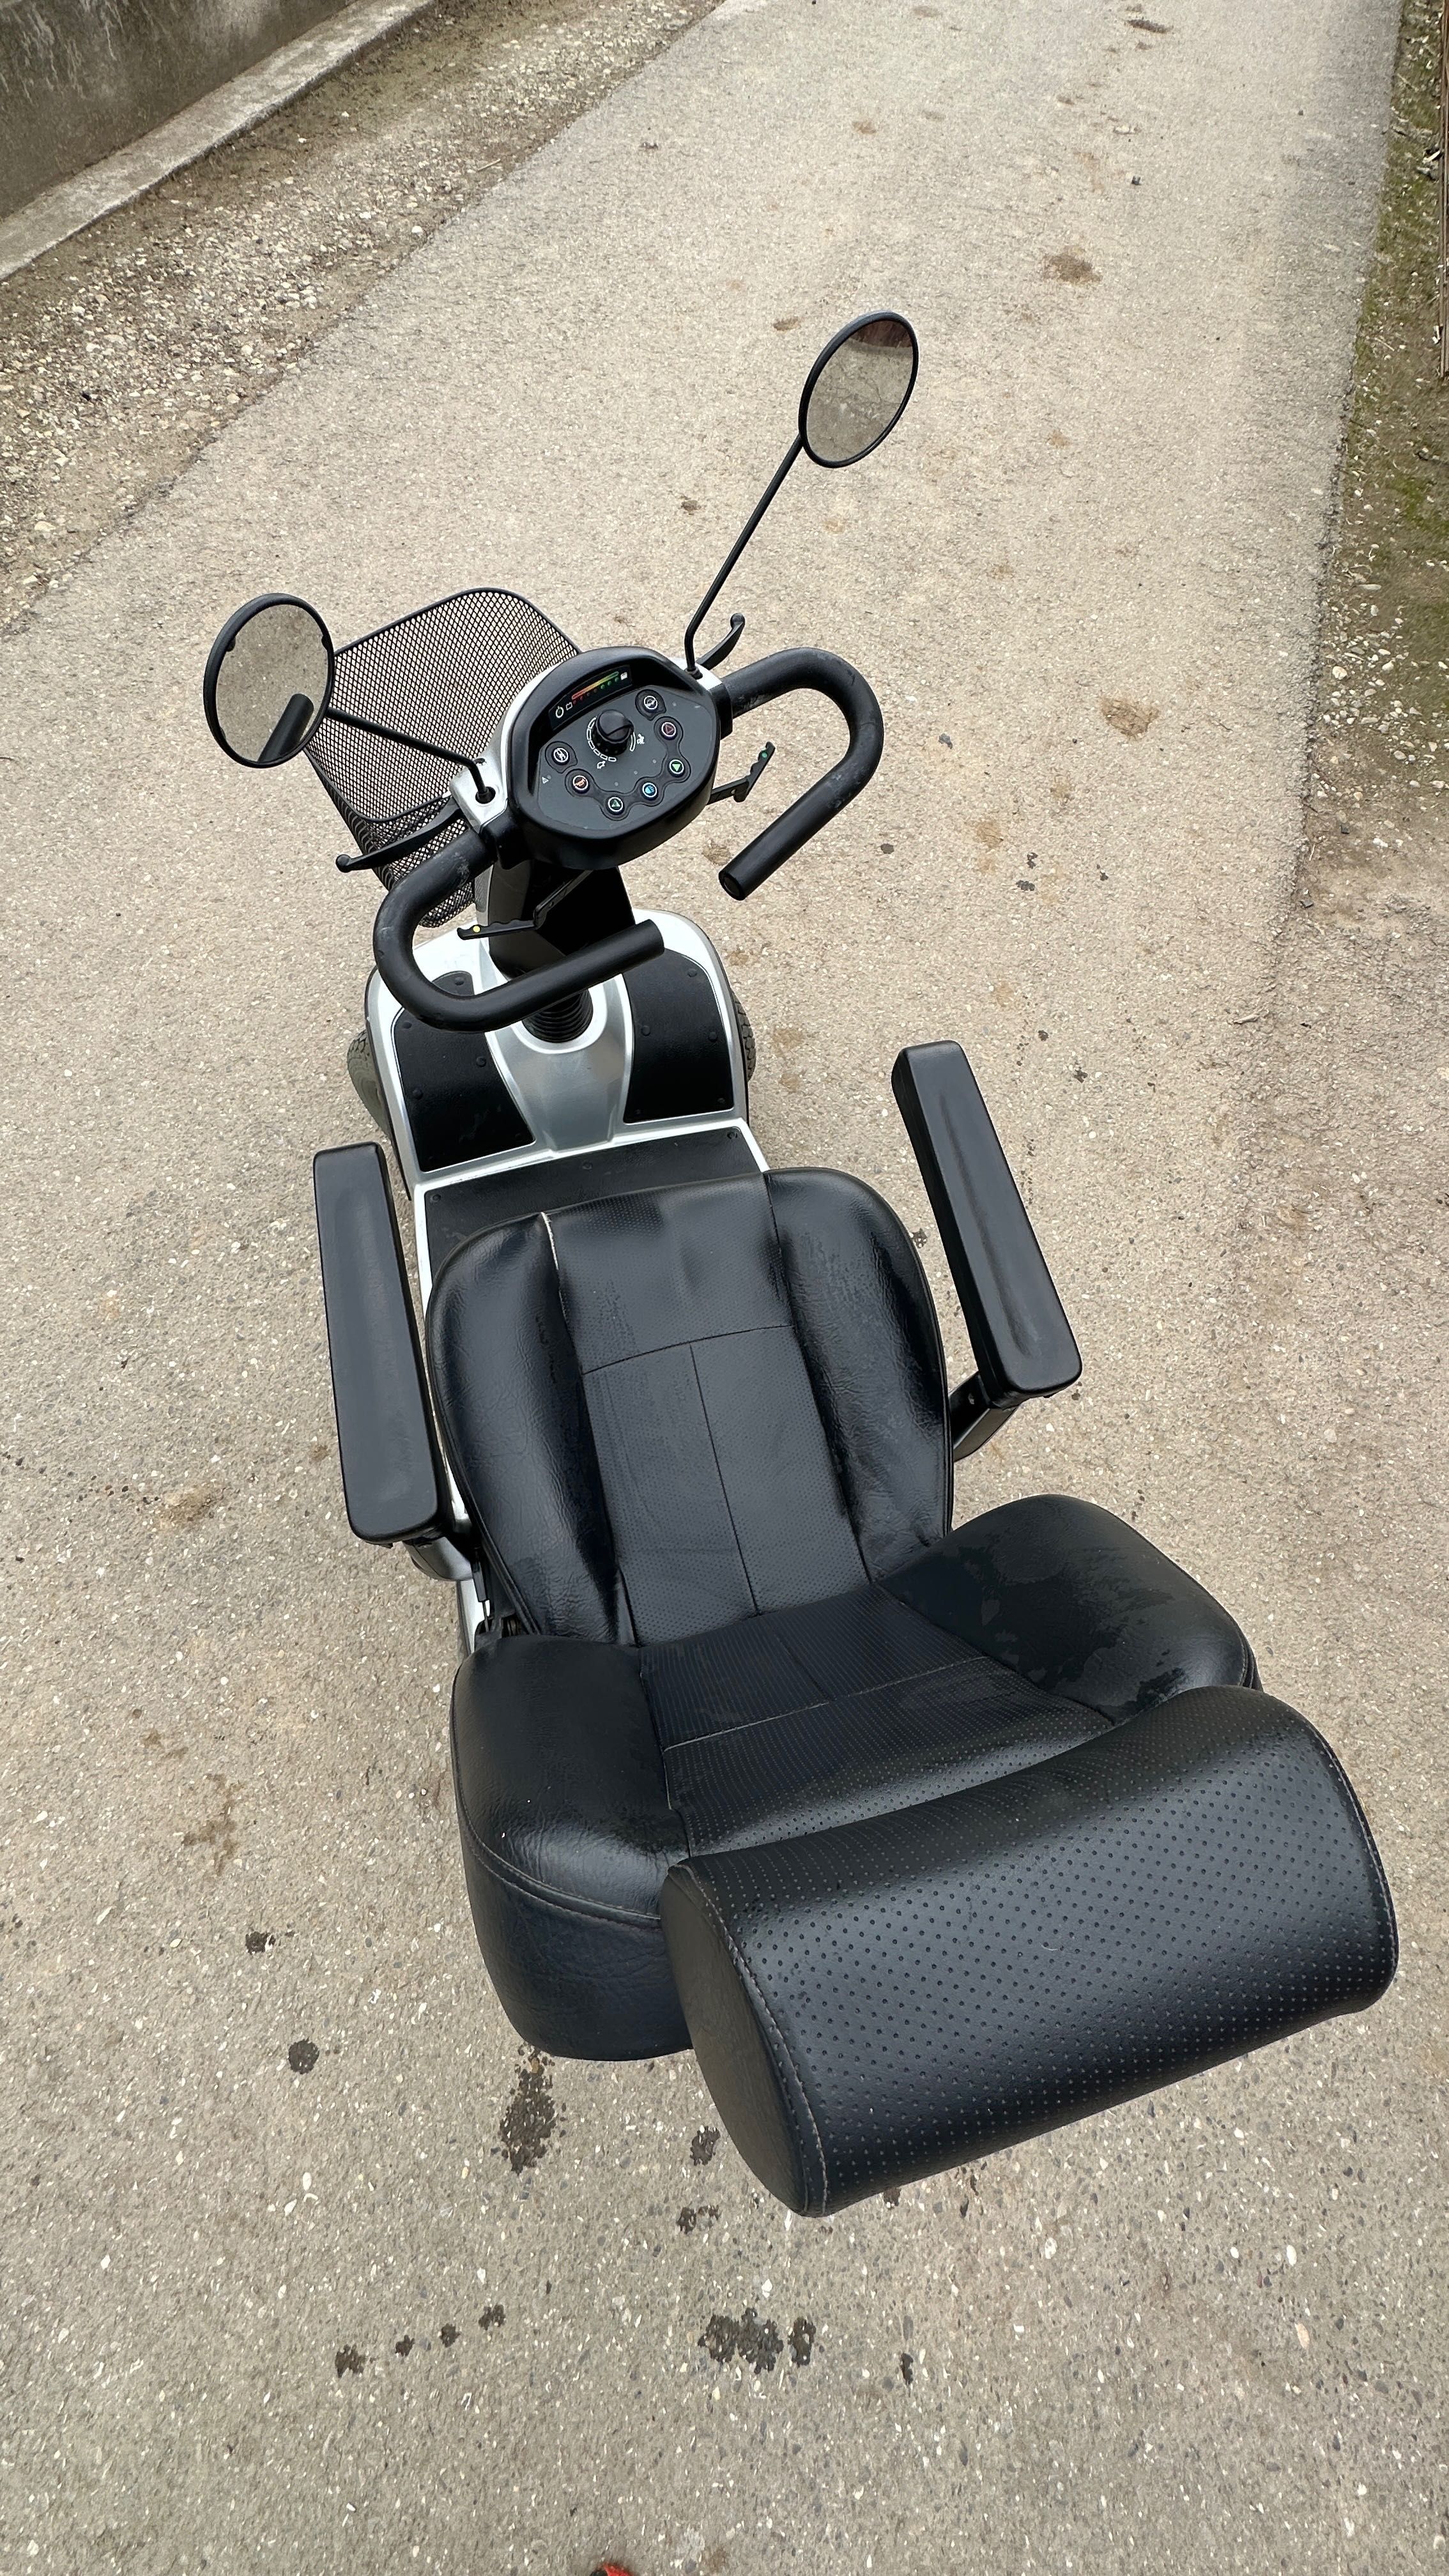 Scooter, cărucior electric, mobilitate redusa / handicap locomotor